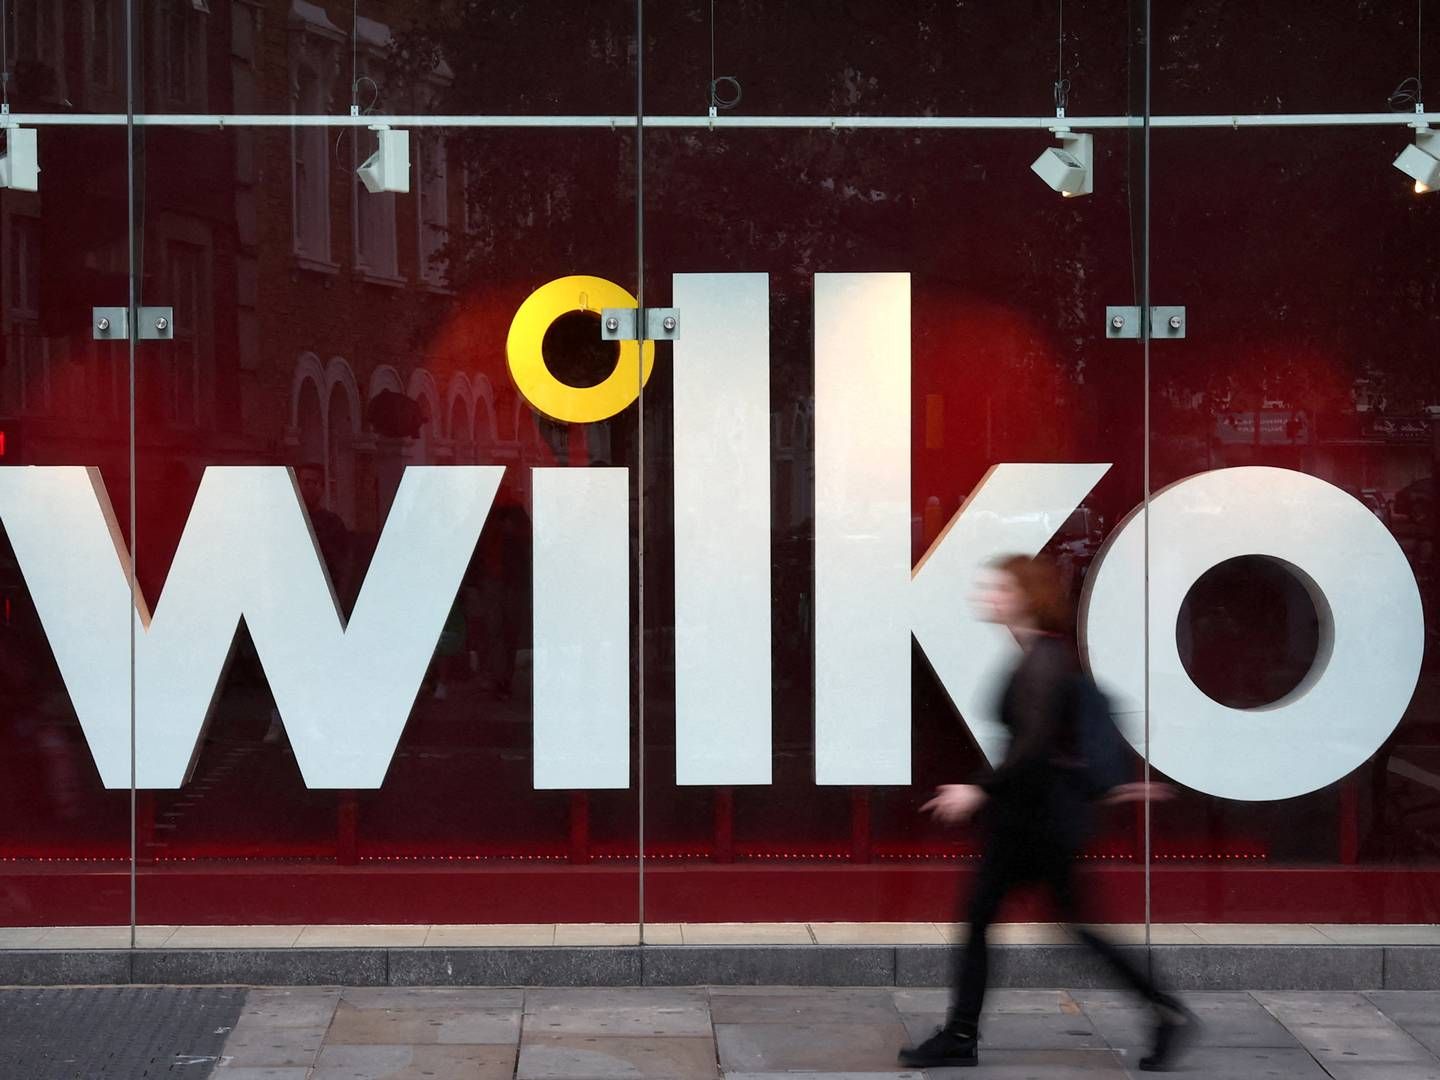 Wilko-kæden, der består af omkring 400 butikker, står til at blive væsentligt reduceret. | Foto: Toby Melville